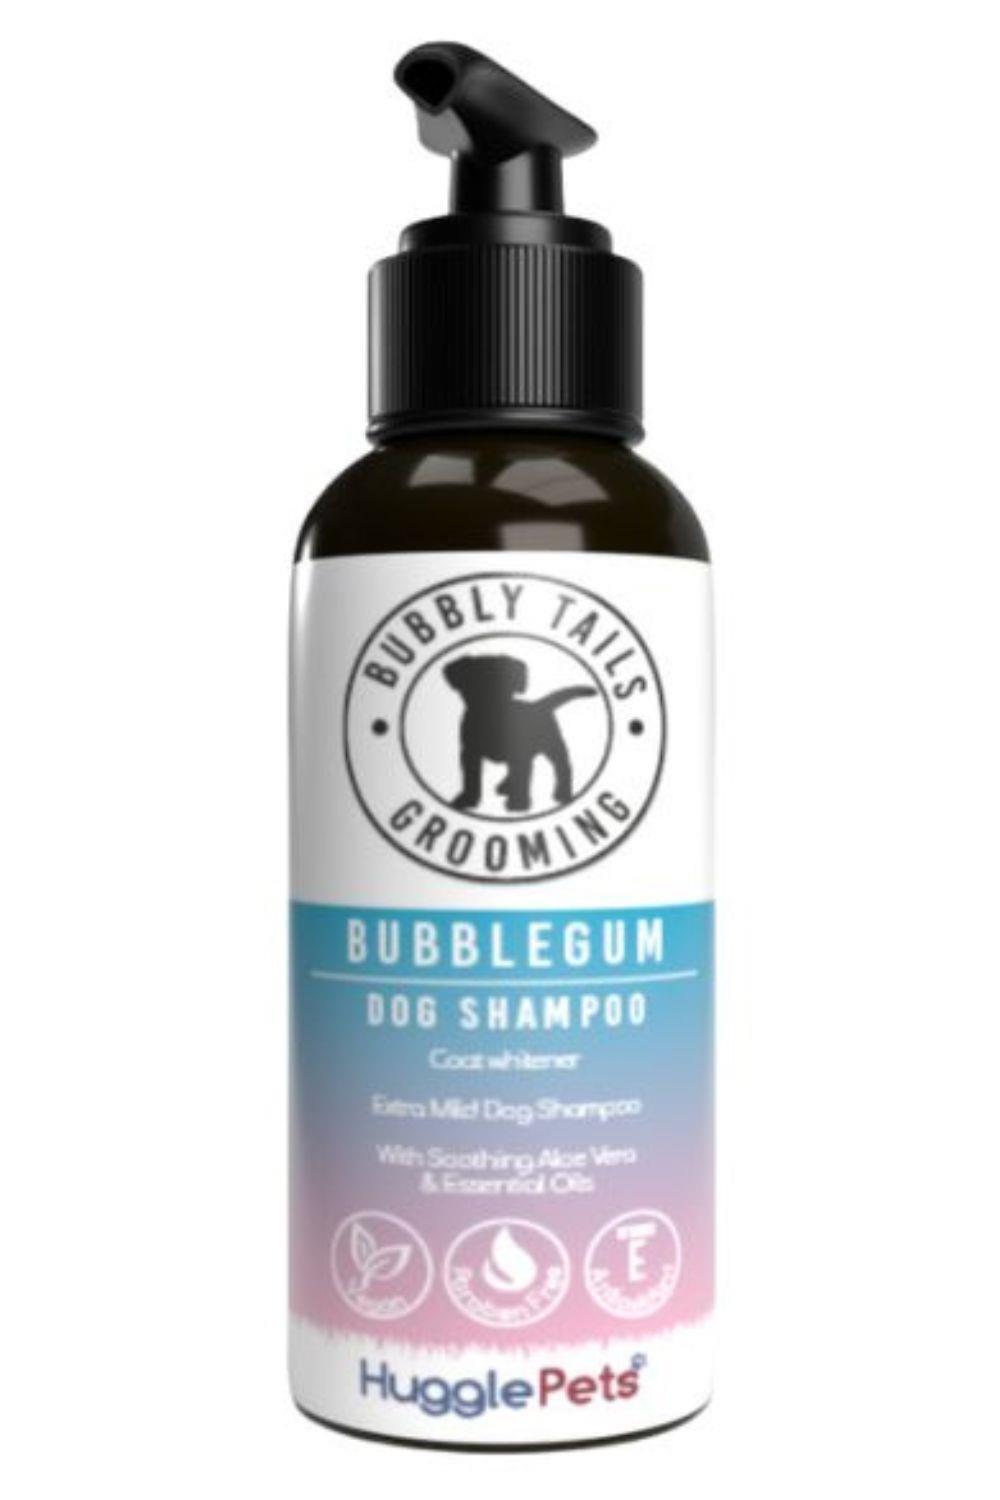 HugglePets Bubbly Tails Bubblegum Whitening Dog Shampoo 1/3